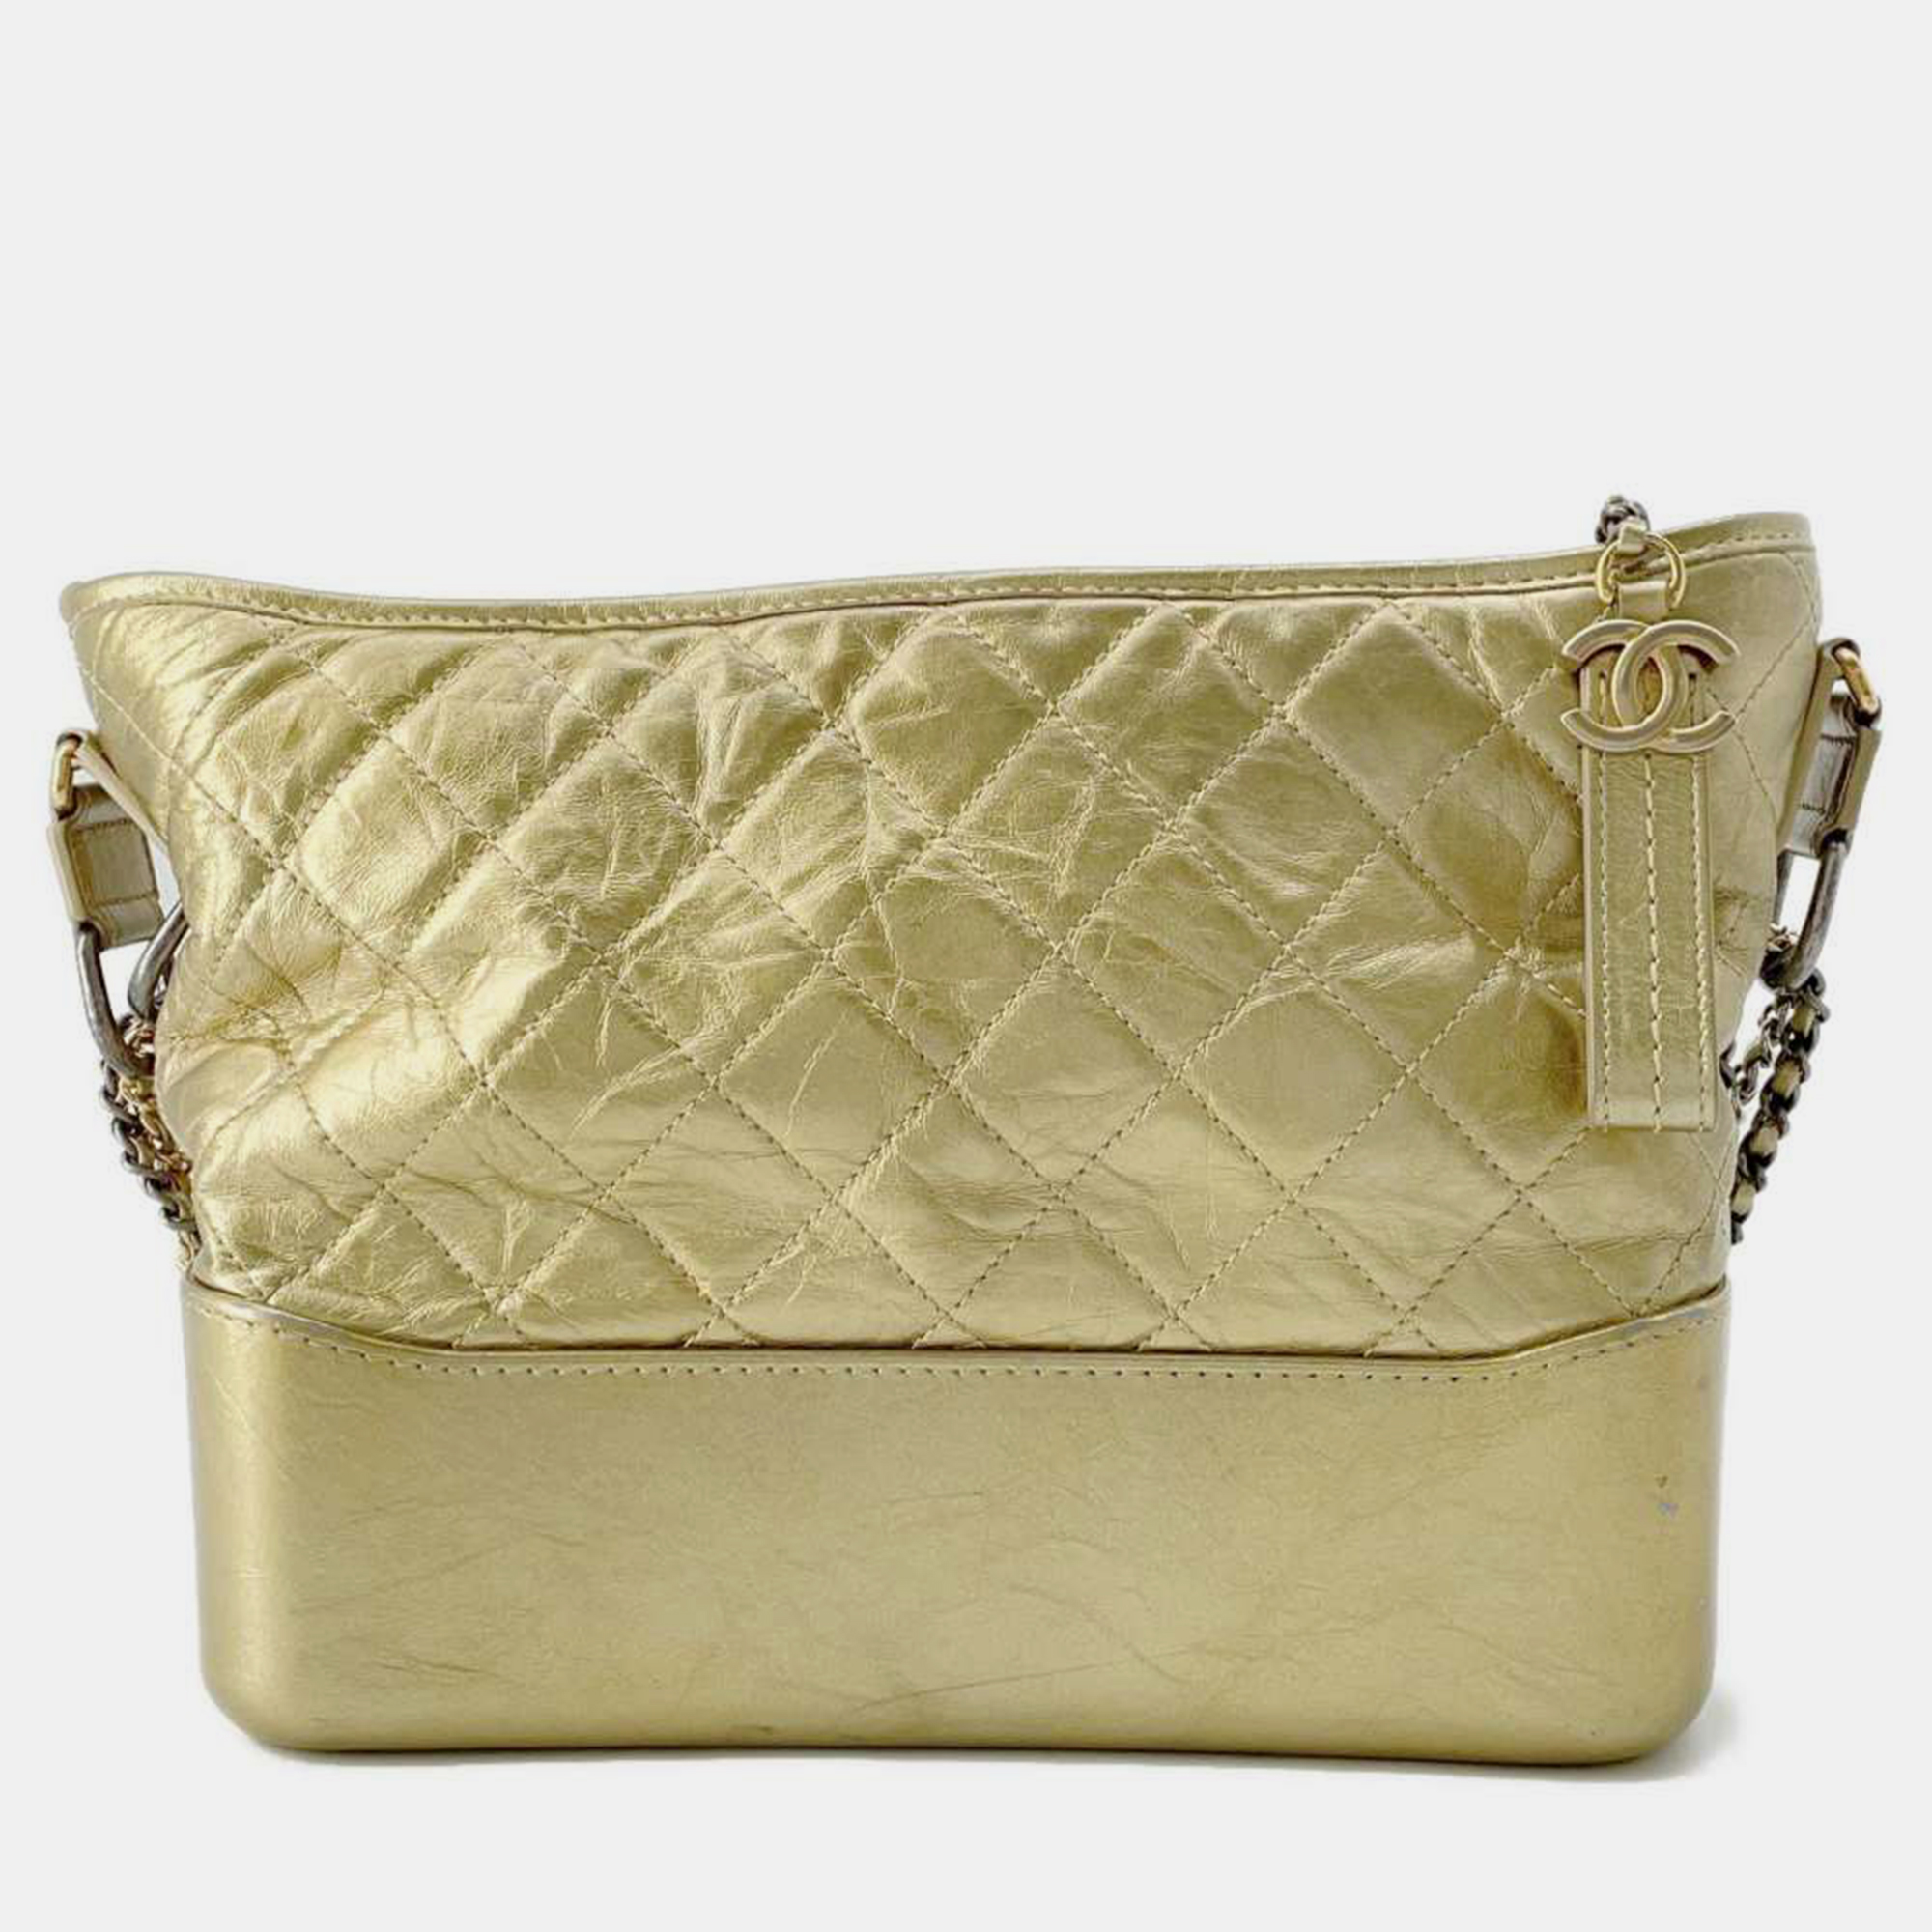 Chanel gold leather gabrielle shoulder bag